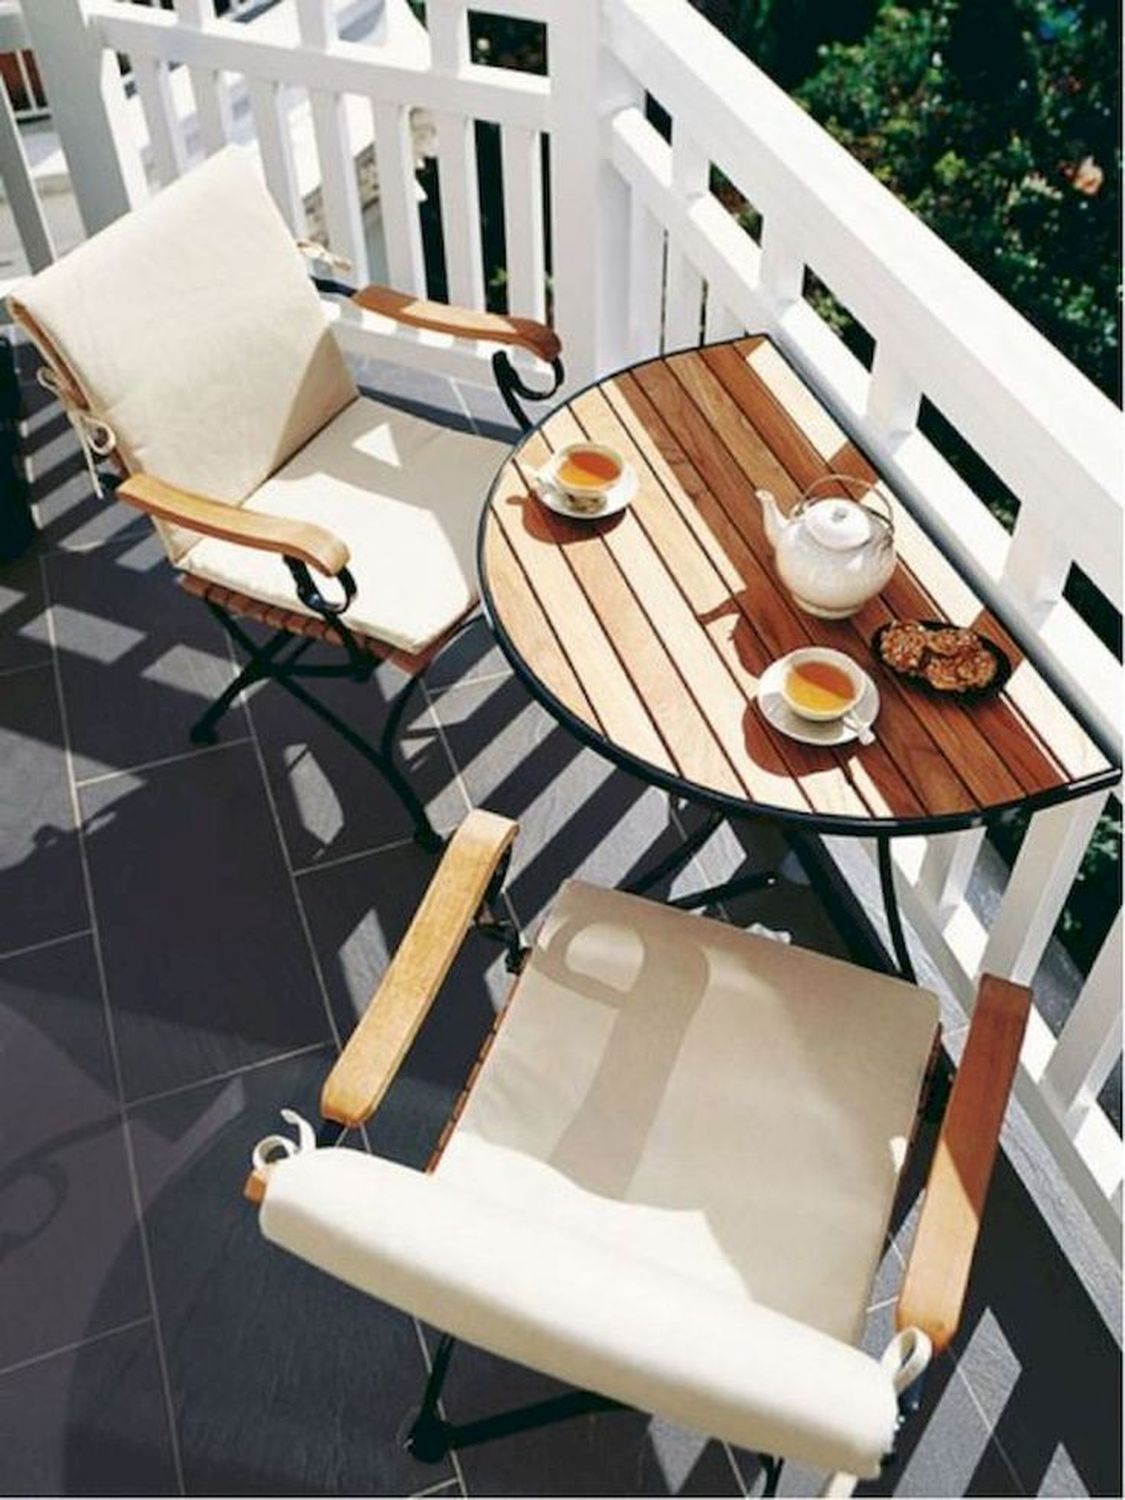 ≫ Mesas Plegables Para Balcones > Comprar, Precio Y Opinión 2023 Pertaining To Coffee Tables For Balconies (View 6 of 15)